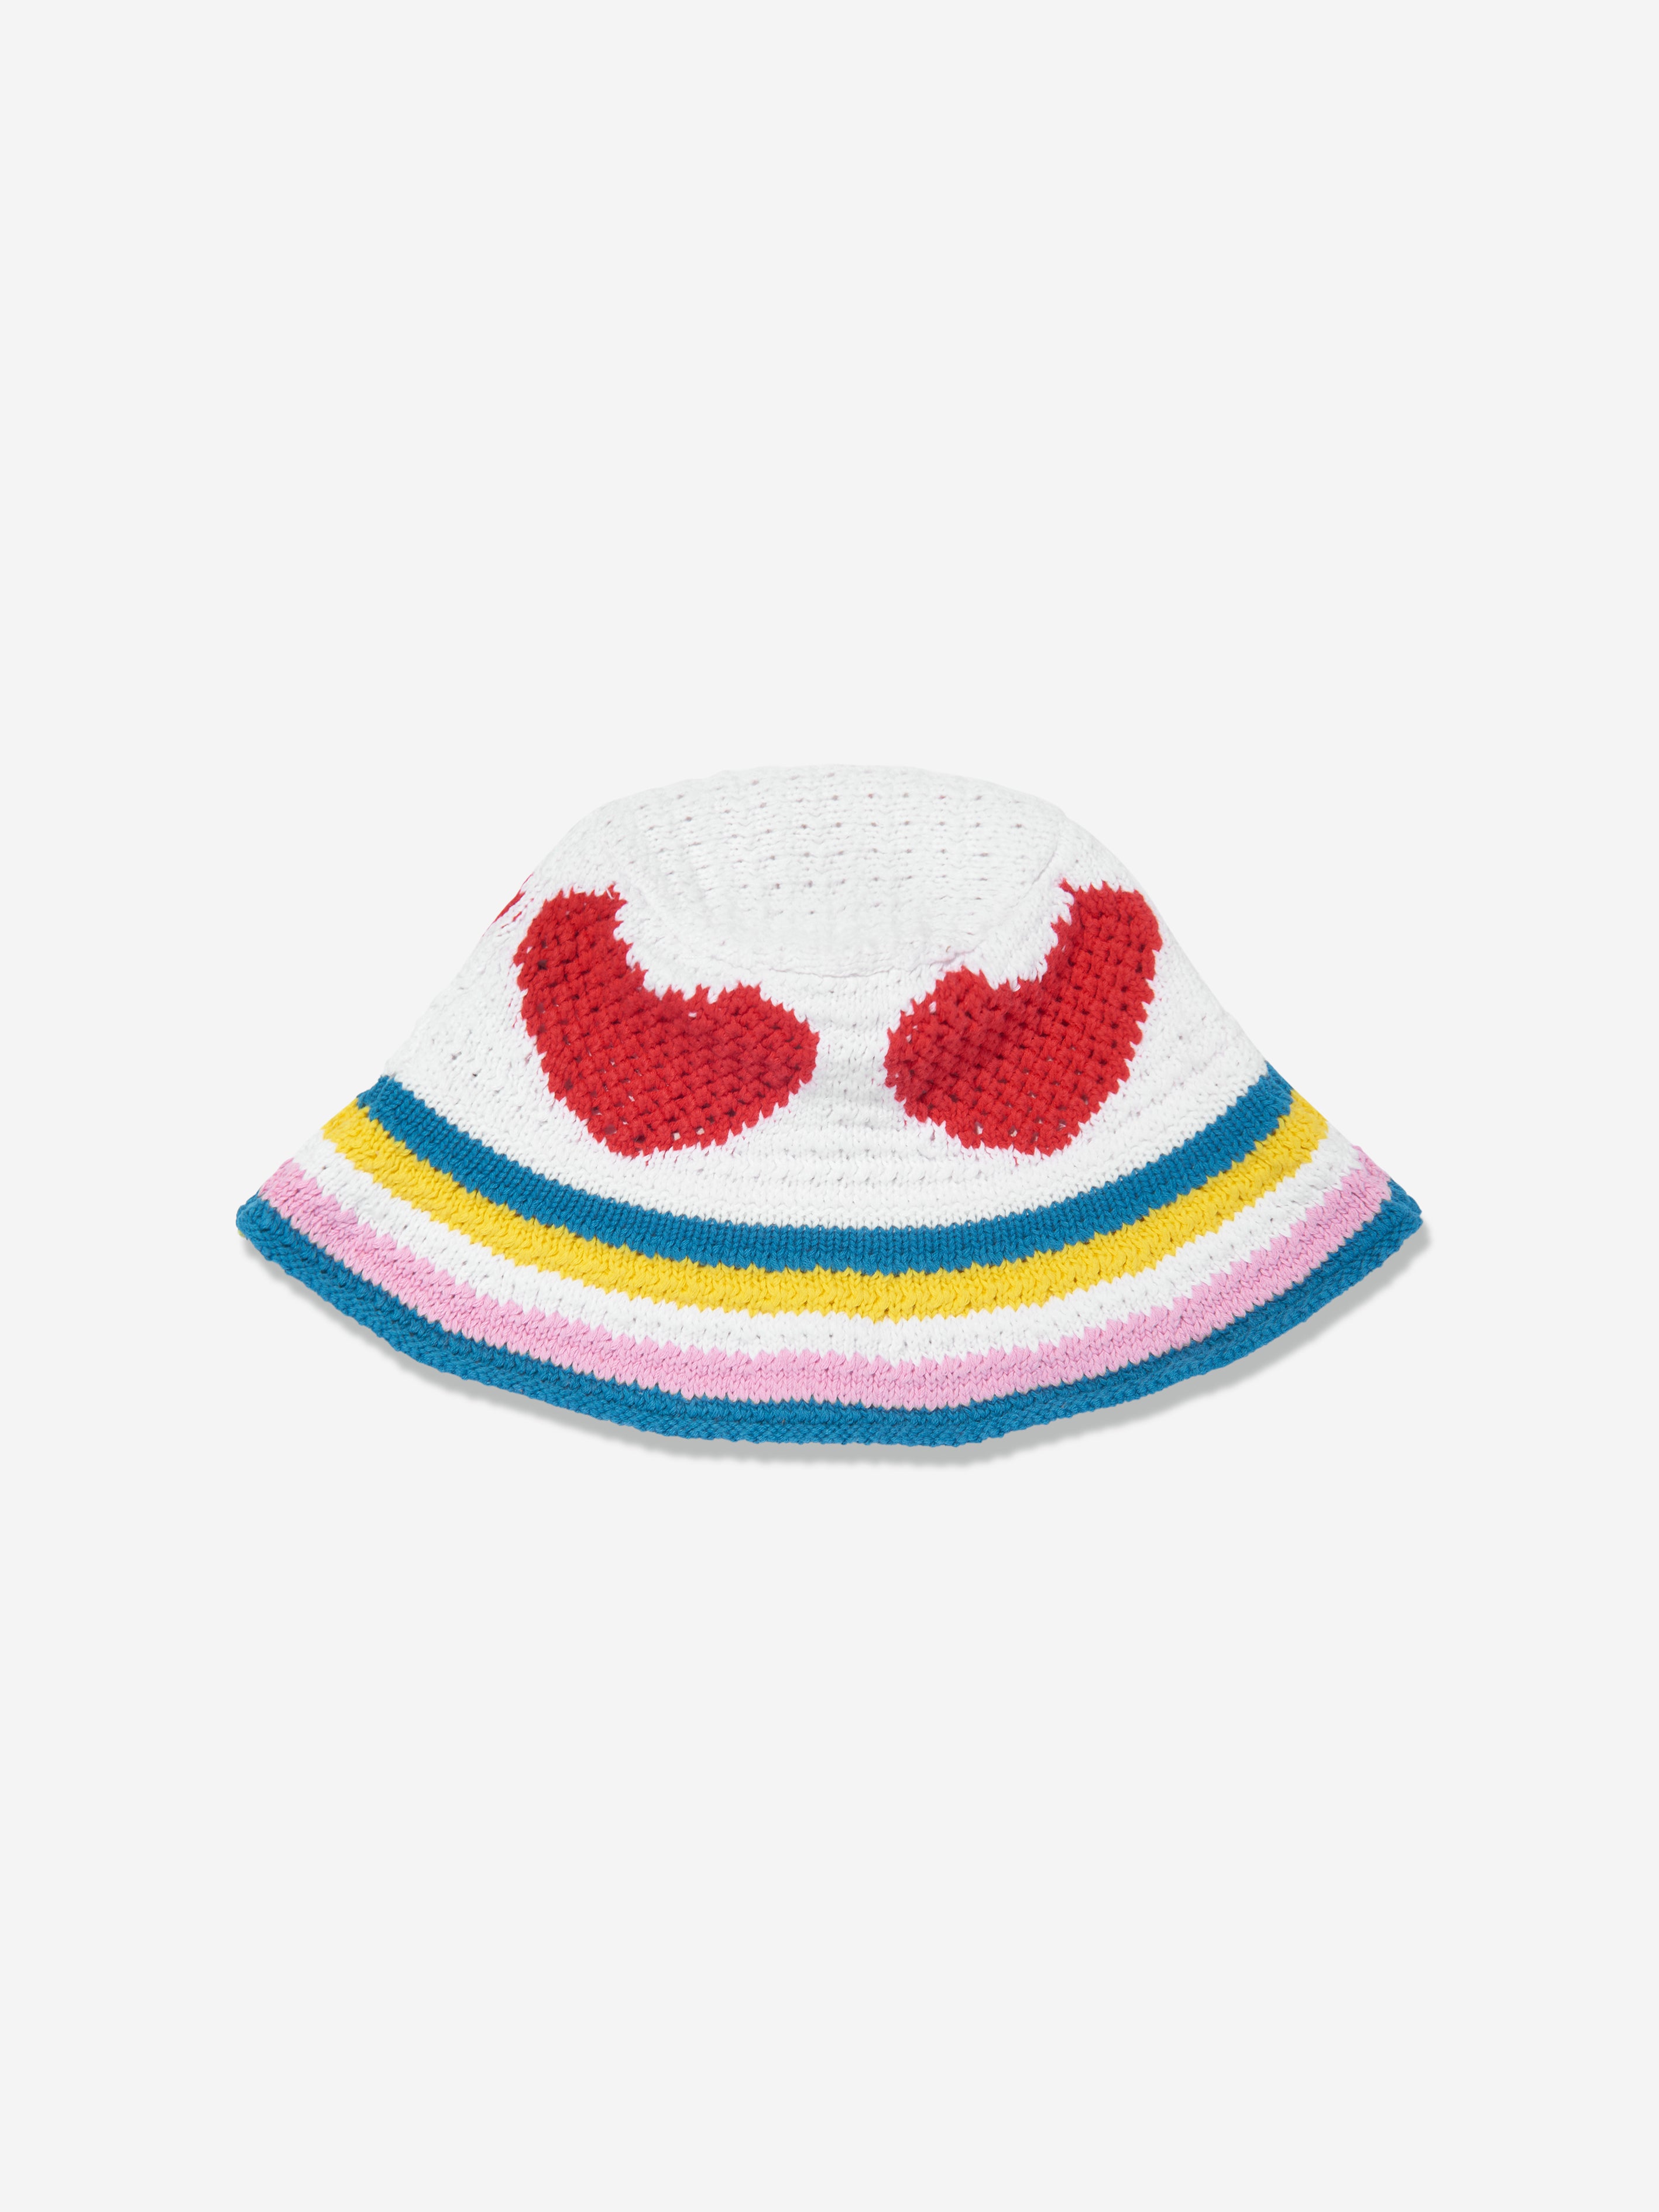 Stella Mccartney Kids' Girls Crochet Heart Sun Hat In Ivory